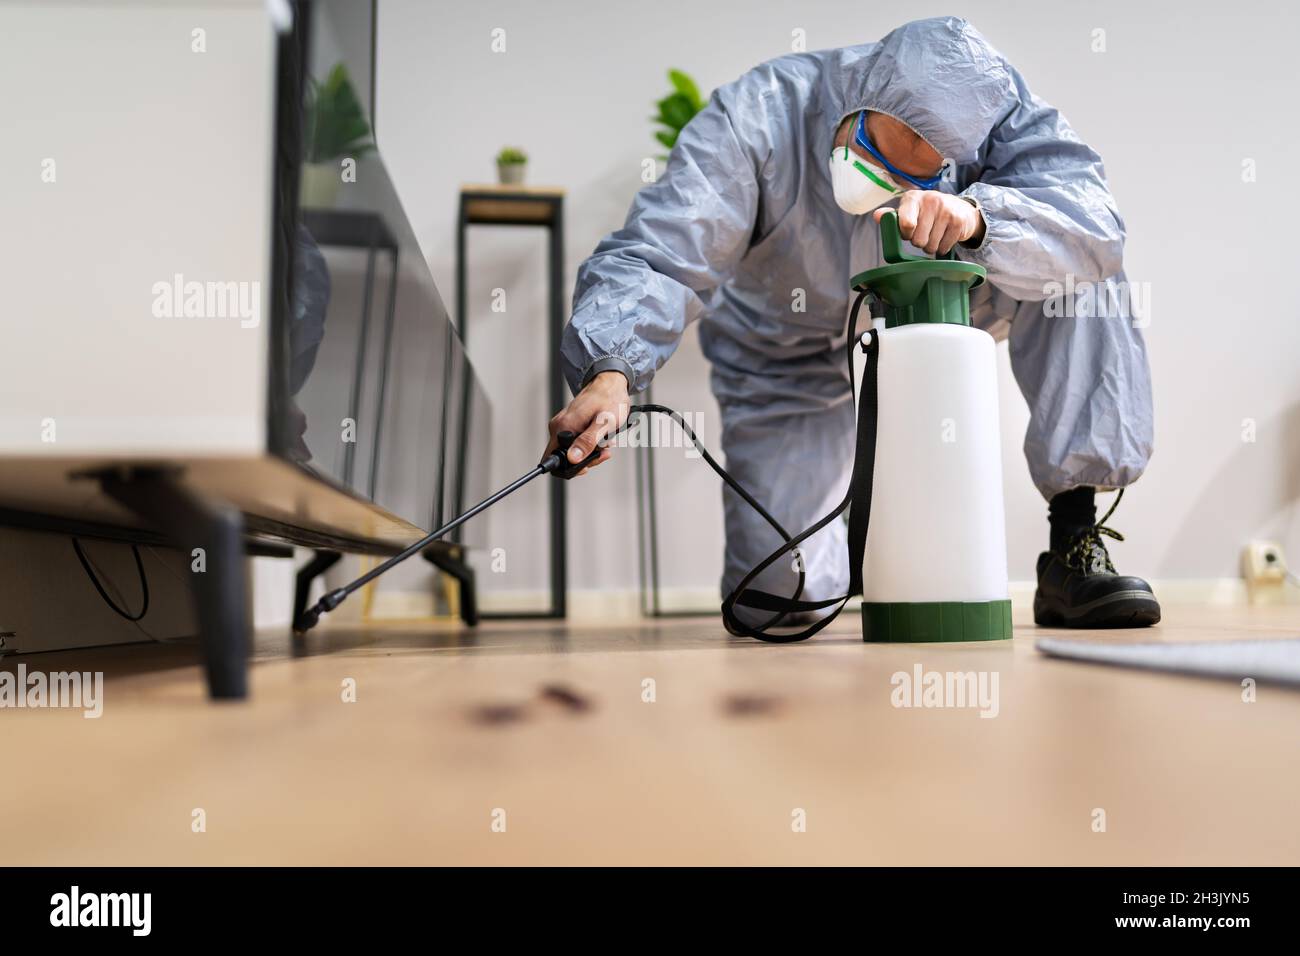 Pest Control Exterminator Man Spraying Termite Pesticide At Home Stock Photo